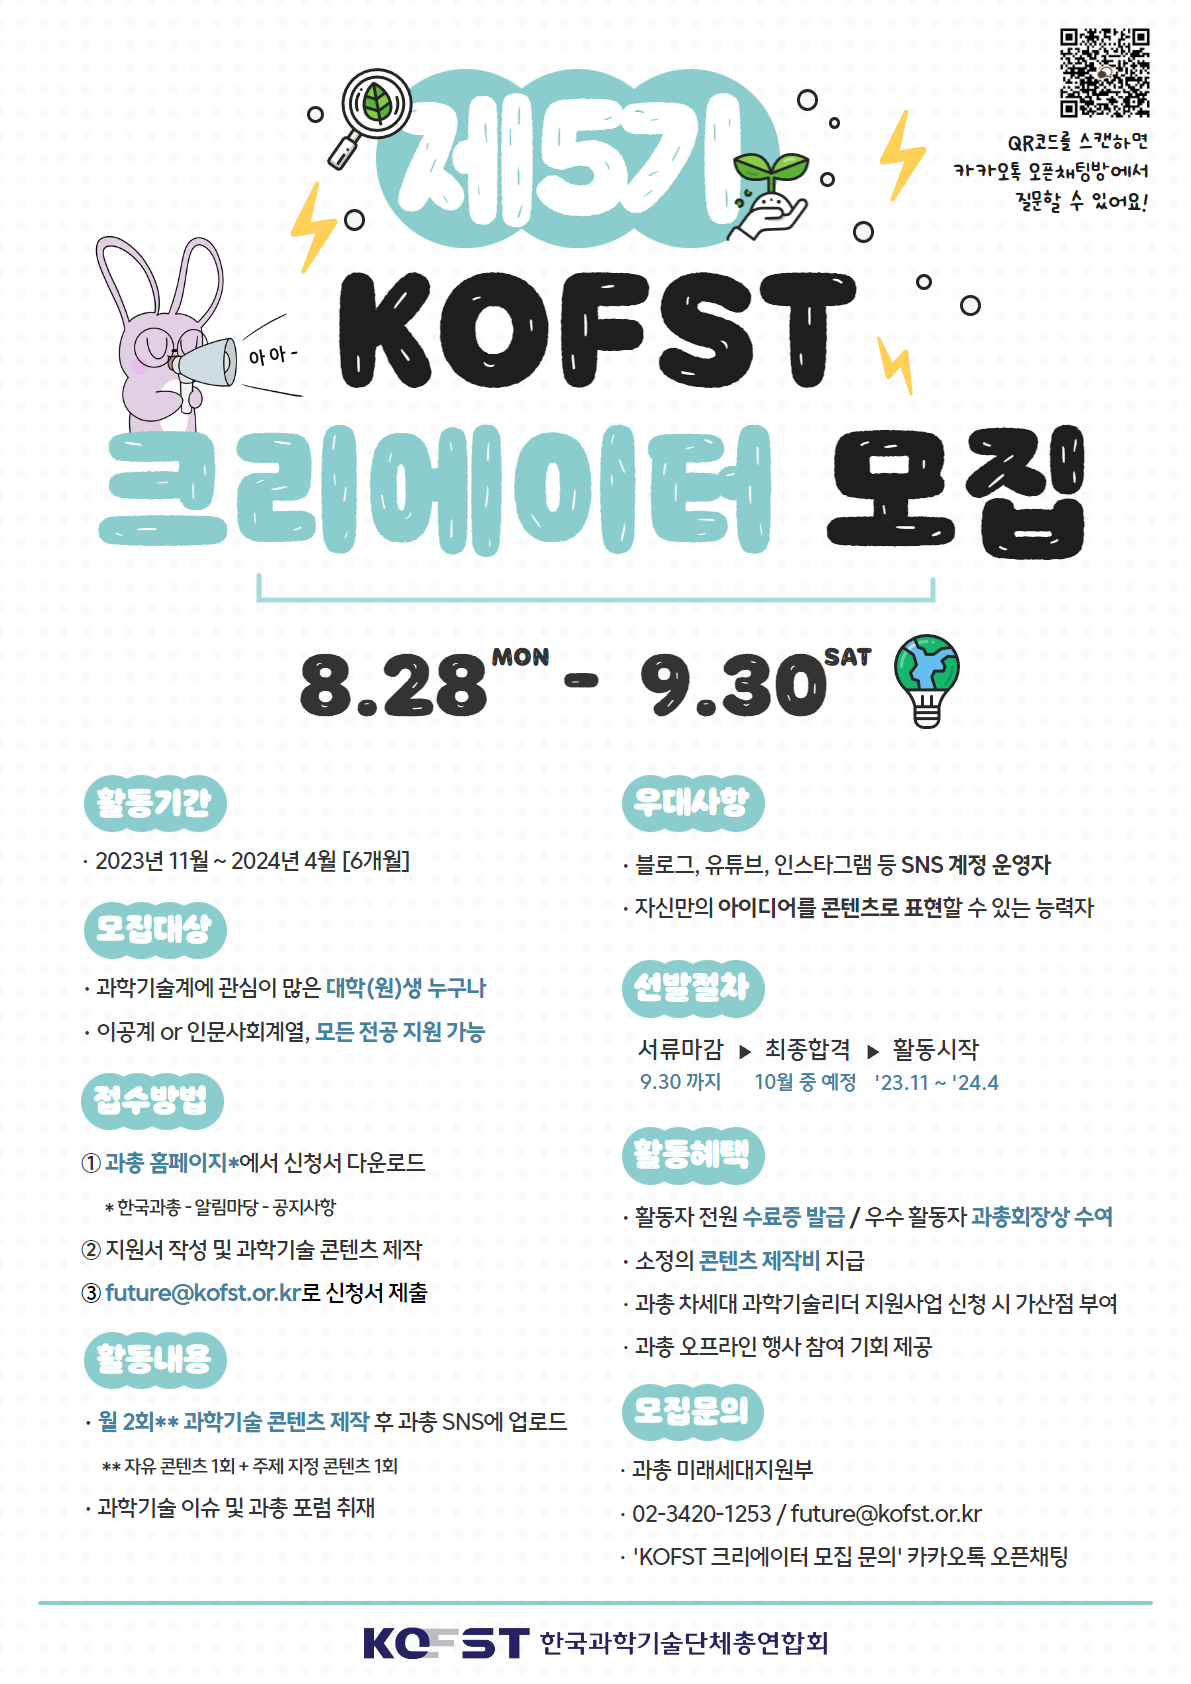 한국과학기술단체총연합회 제5기 KOFST 크리에이터 모집